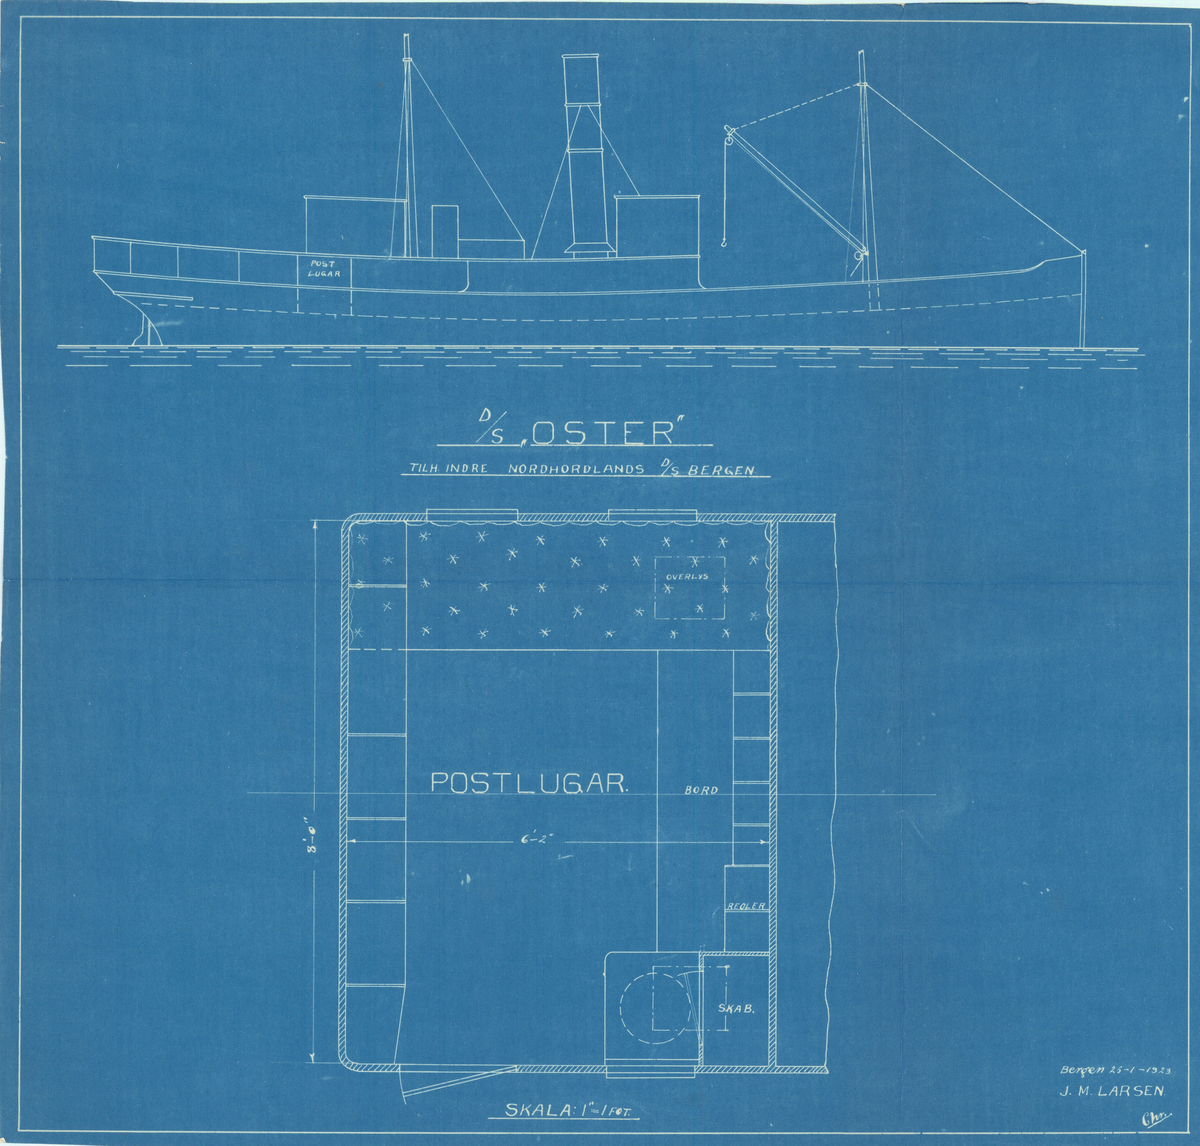 Tegning viser plassering og plan av postlugar på D/S Oster.